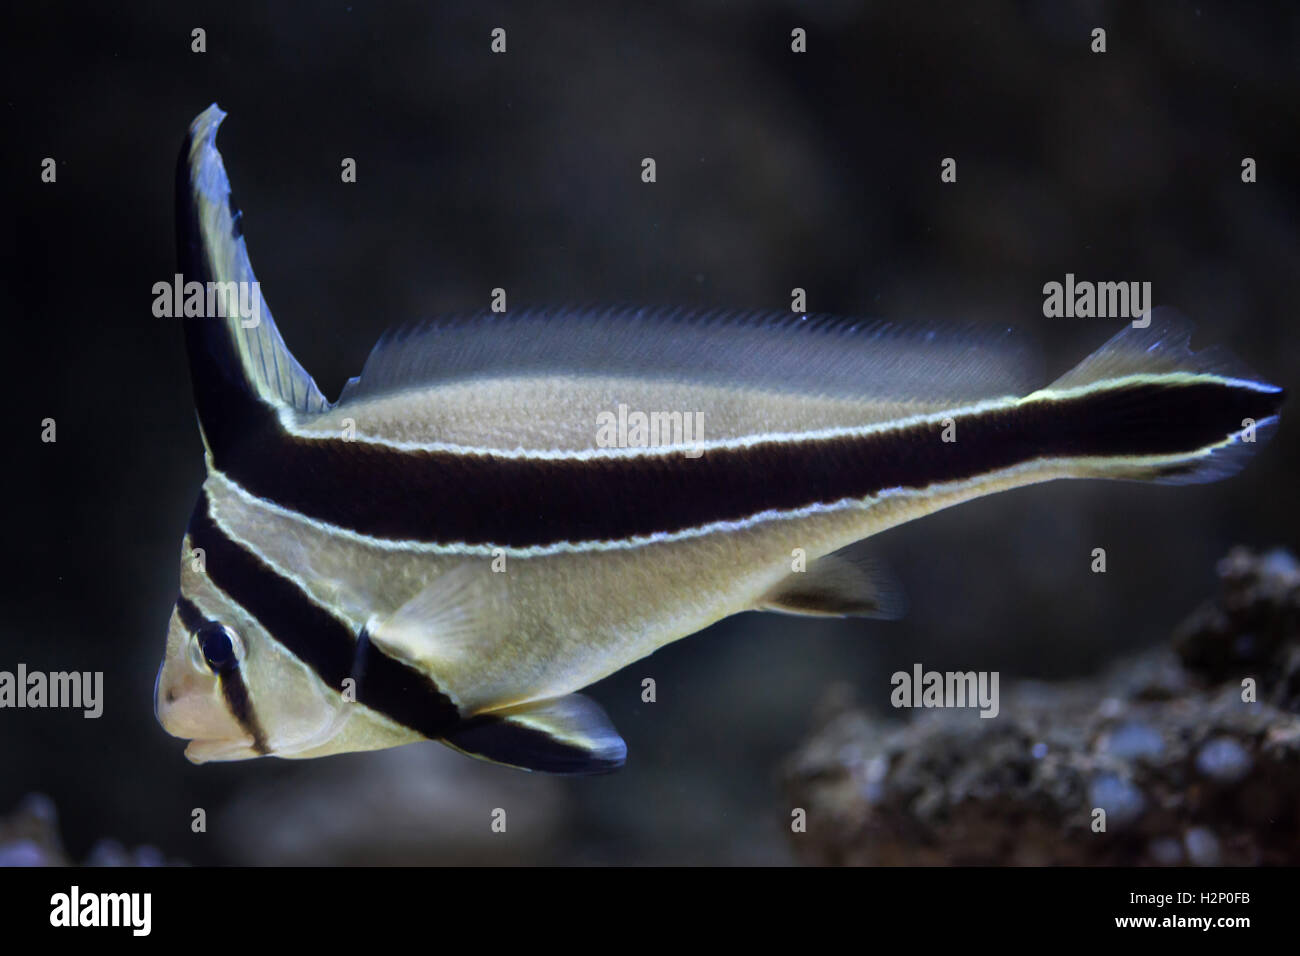 Jack-knifefish (Equetus lanceolatus). Marine fish. Stock Photo